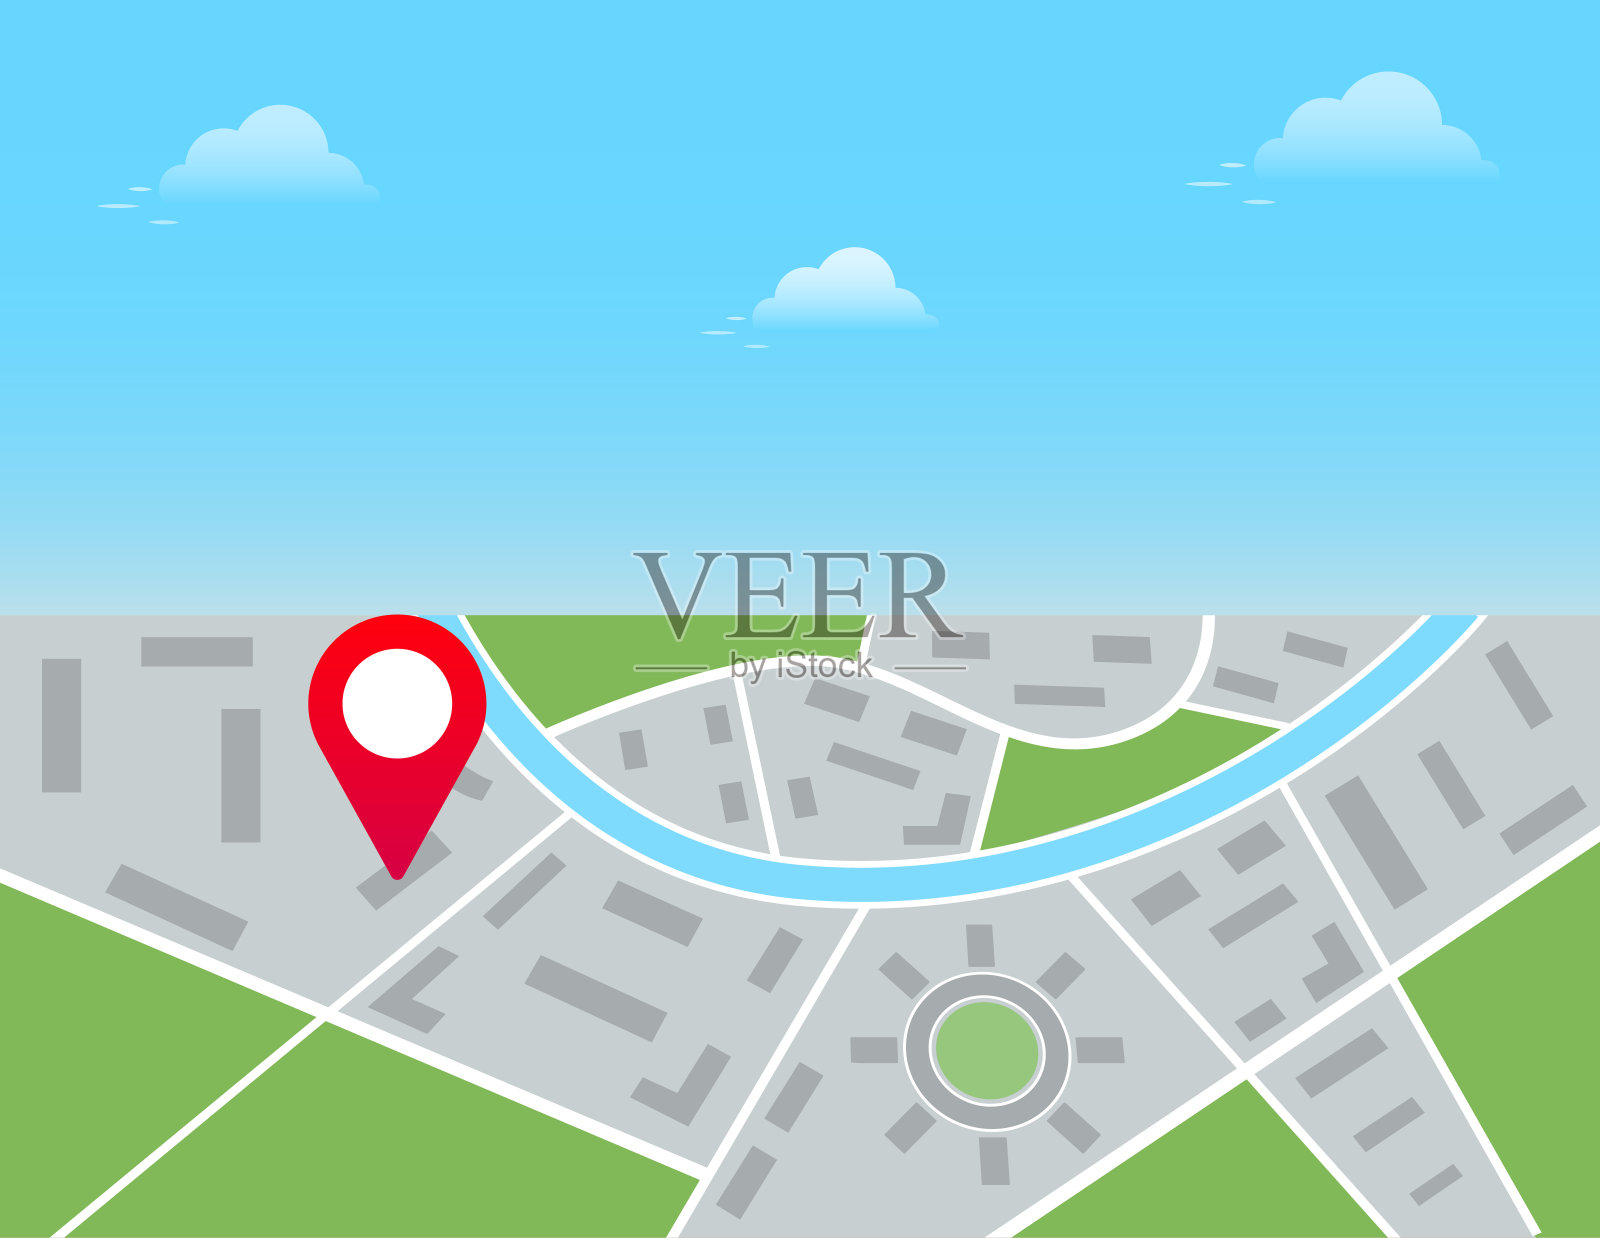 红色大头针标记显示城市地图上的位置，gps导航，路线目的地检查点。矢量图插画图片素材